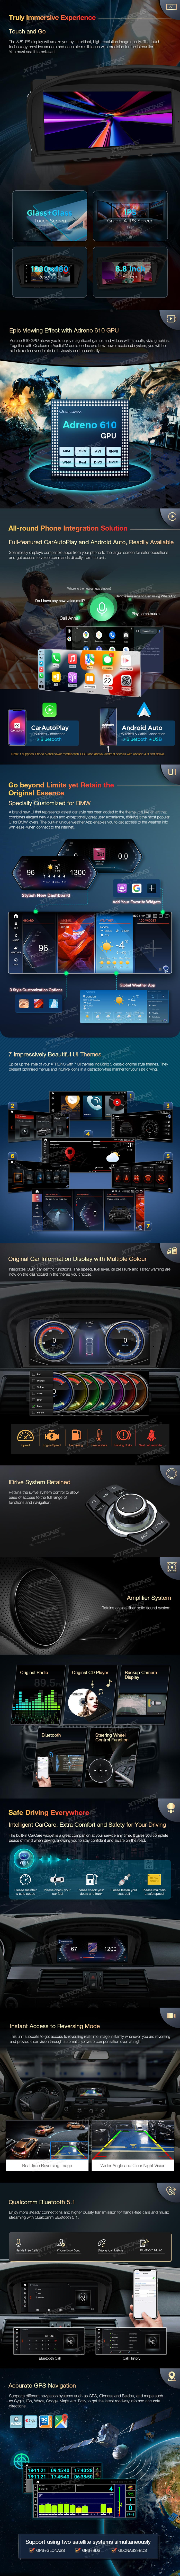 APPLE CARPLAY IR ANDROID AUTO Multimedijoje integruota Apple CarPlay (Bluetooth) ir Android Auto (Bluetooth/USB) , kas leižia prijungti išmanūjį telefoną prie multimedijos ir naudotis visomis jo funkcijomis multimedijos ekrane.